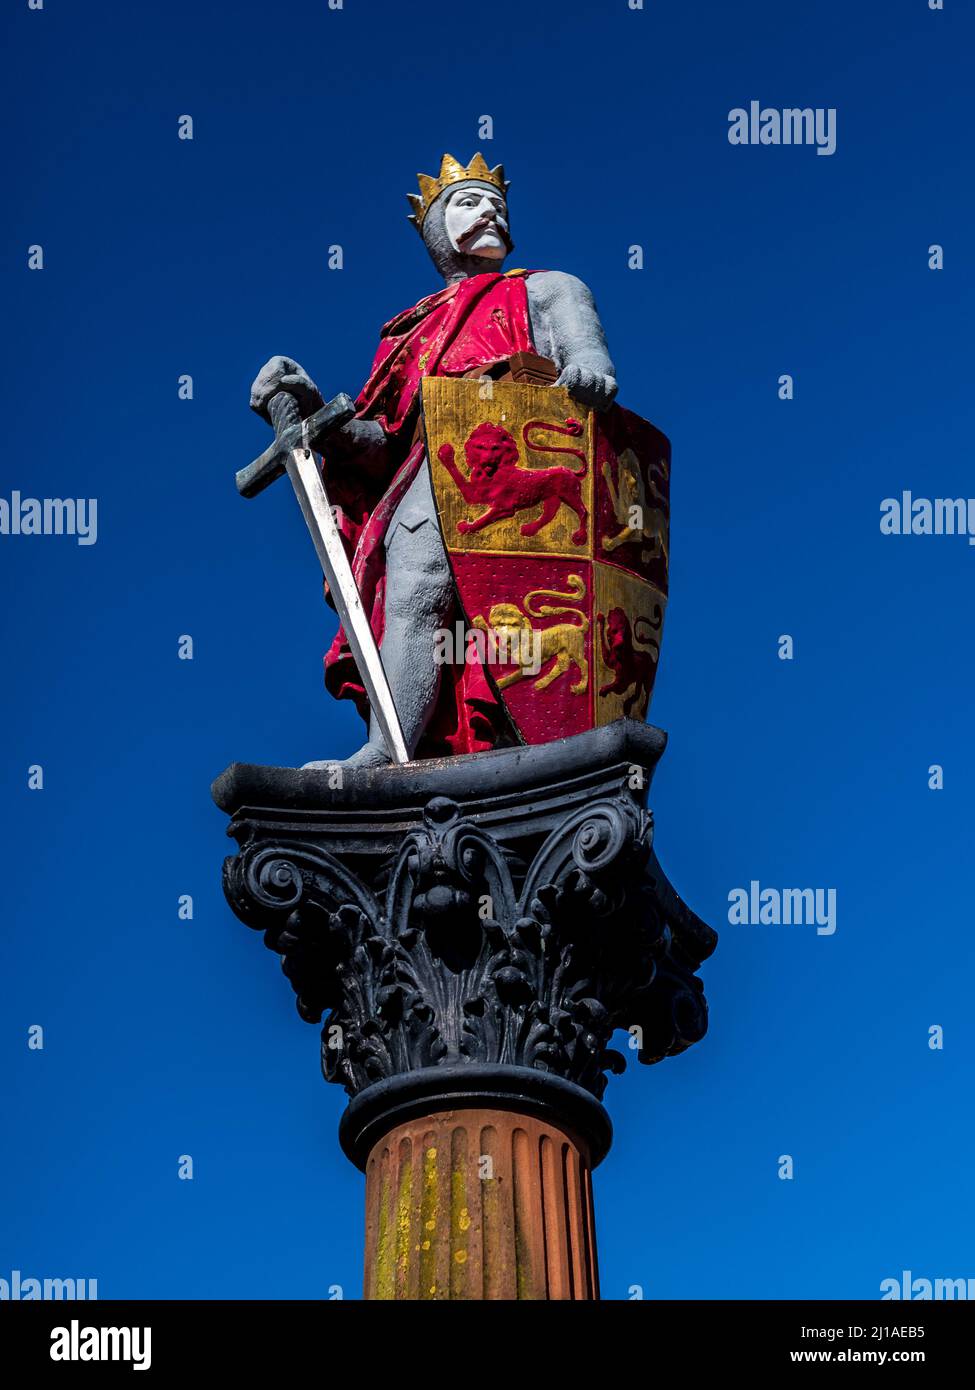 Prince Llewelyn la grande statue à Lancaster Square - Conwy Llewelyn est devenu de facto chef de beaucoup de pays de Galles au 13e siècle. Statue par Ray Lomas. Banque D'Images